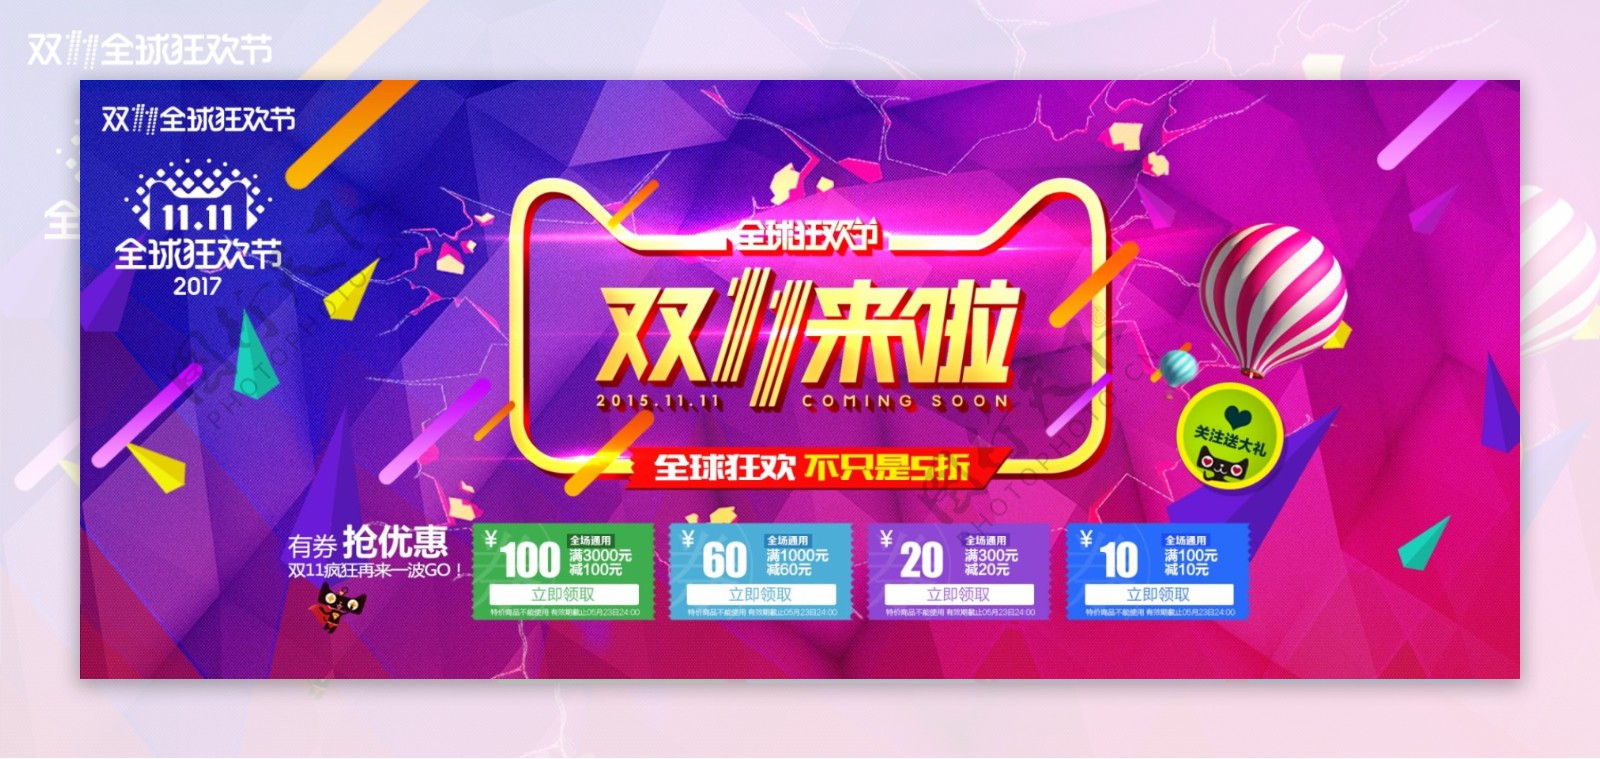 2017天猫双十一红蓝主色调热烈促销海报